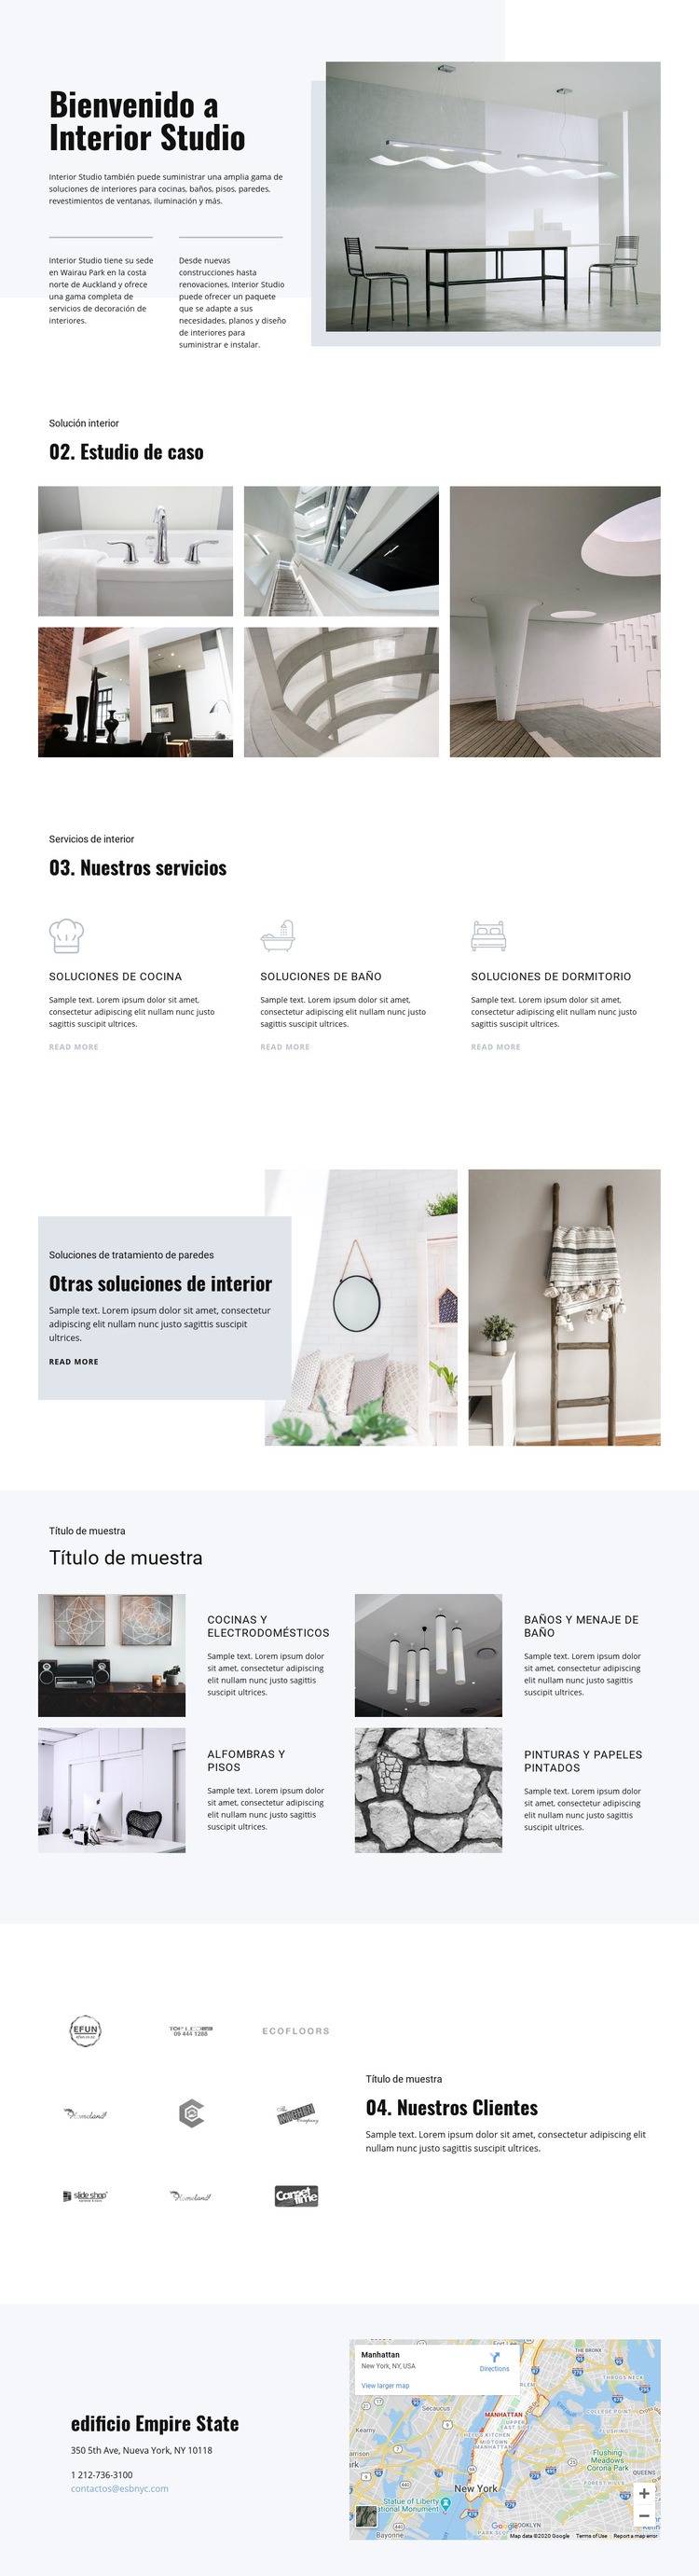 Bienvenido a interior studio Diseño de páginas web